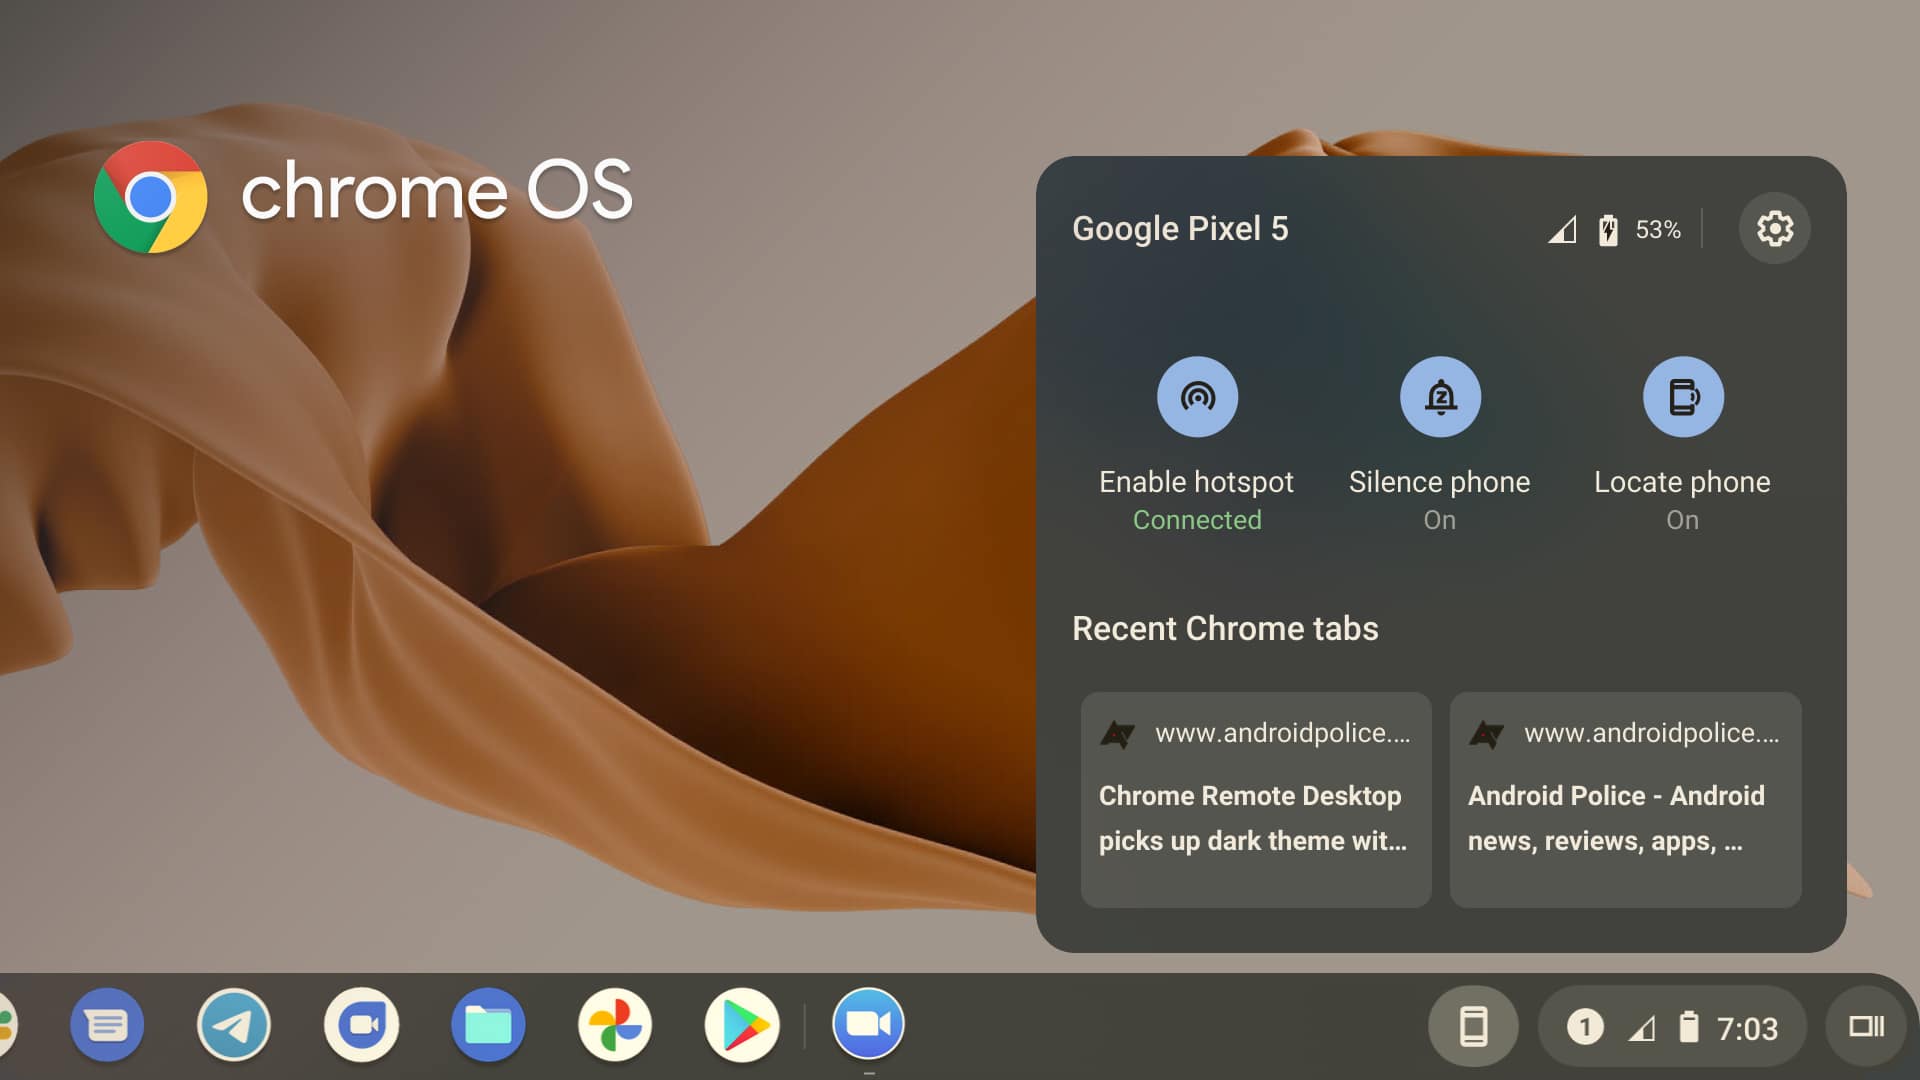 أهم ميزات Chrome OS لعام 2021 لا تأتي من جوجل